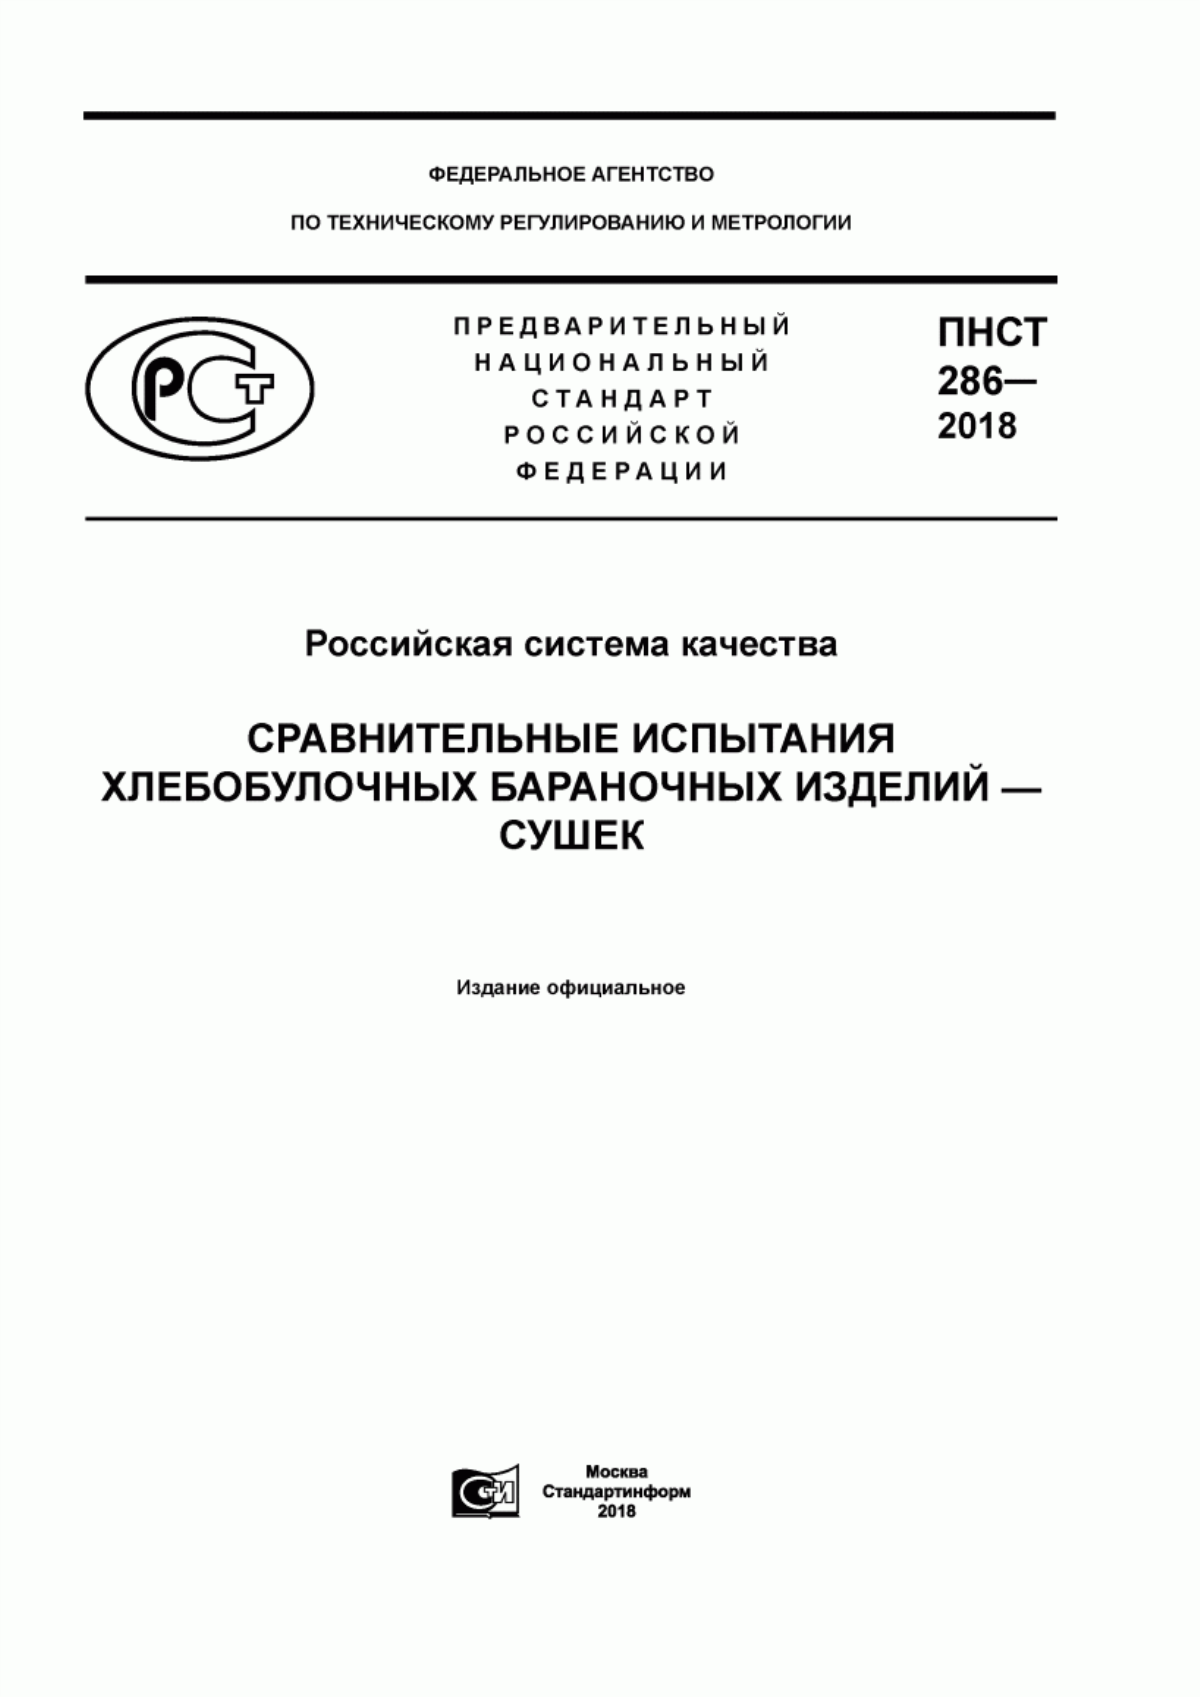 ПНСТ 286-2018 Российская система качества. Сравнительные испытания хлебобулочных бараночных изделий - сушек